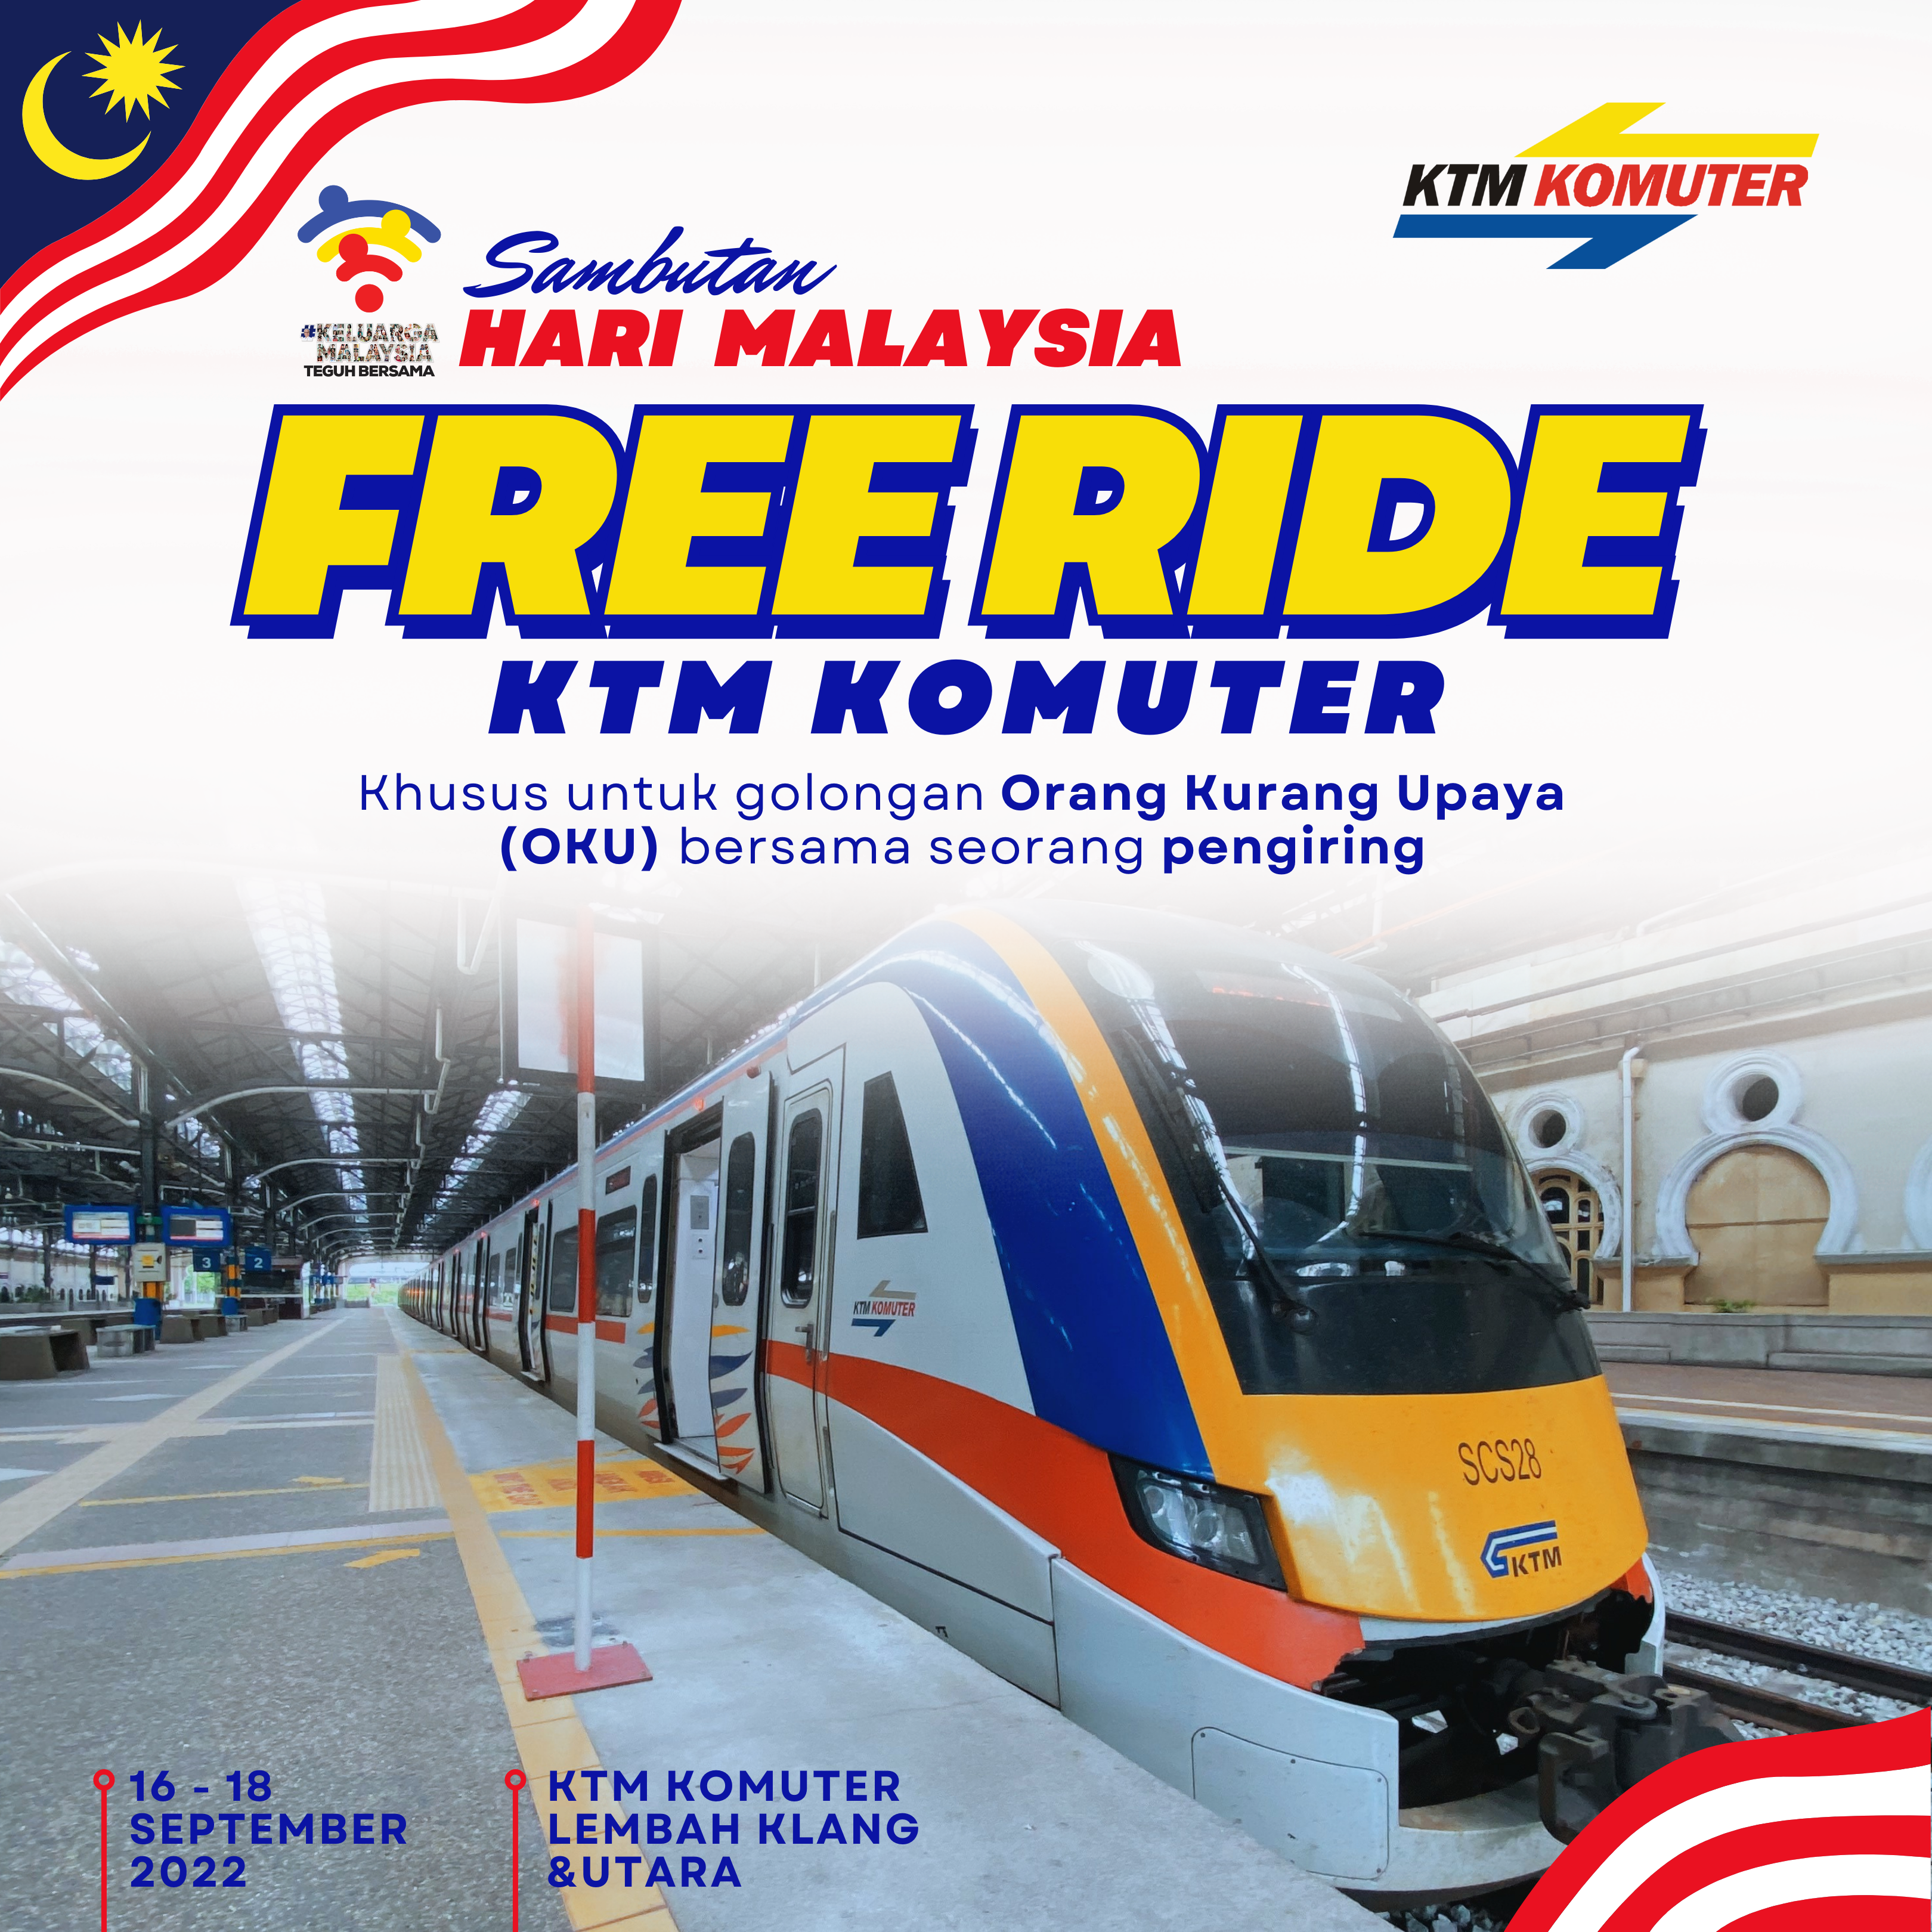 马来西亚日 残疾人士免费乘搭KTM电动火车